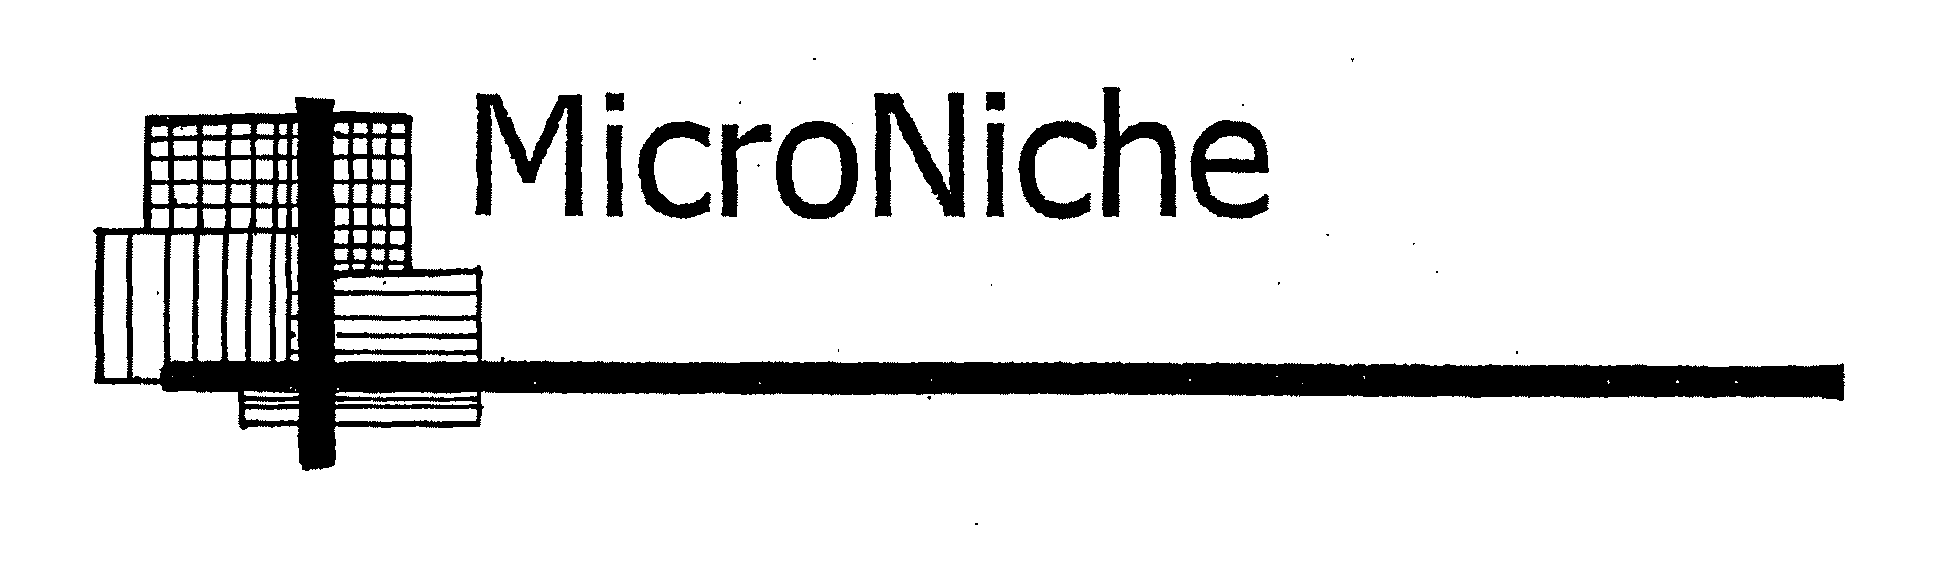  MICRONICHE